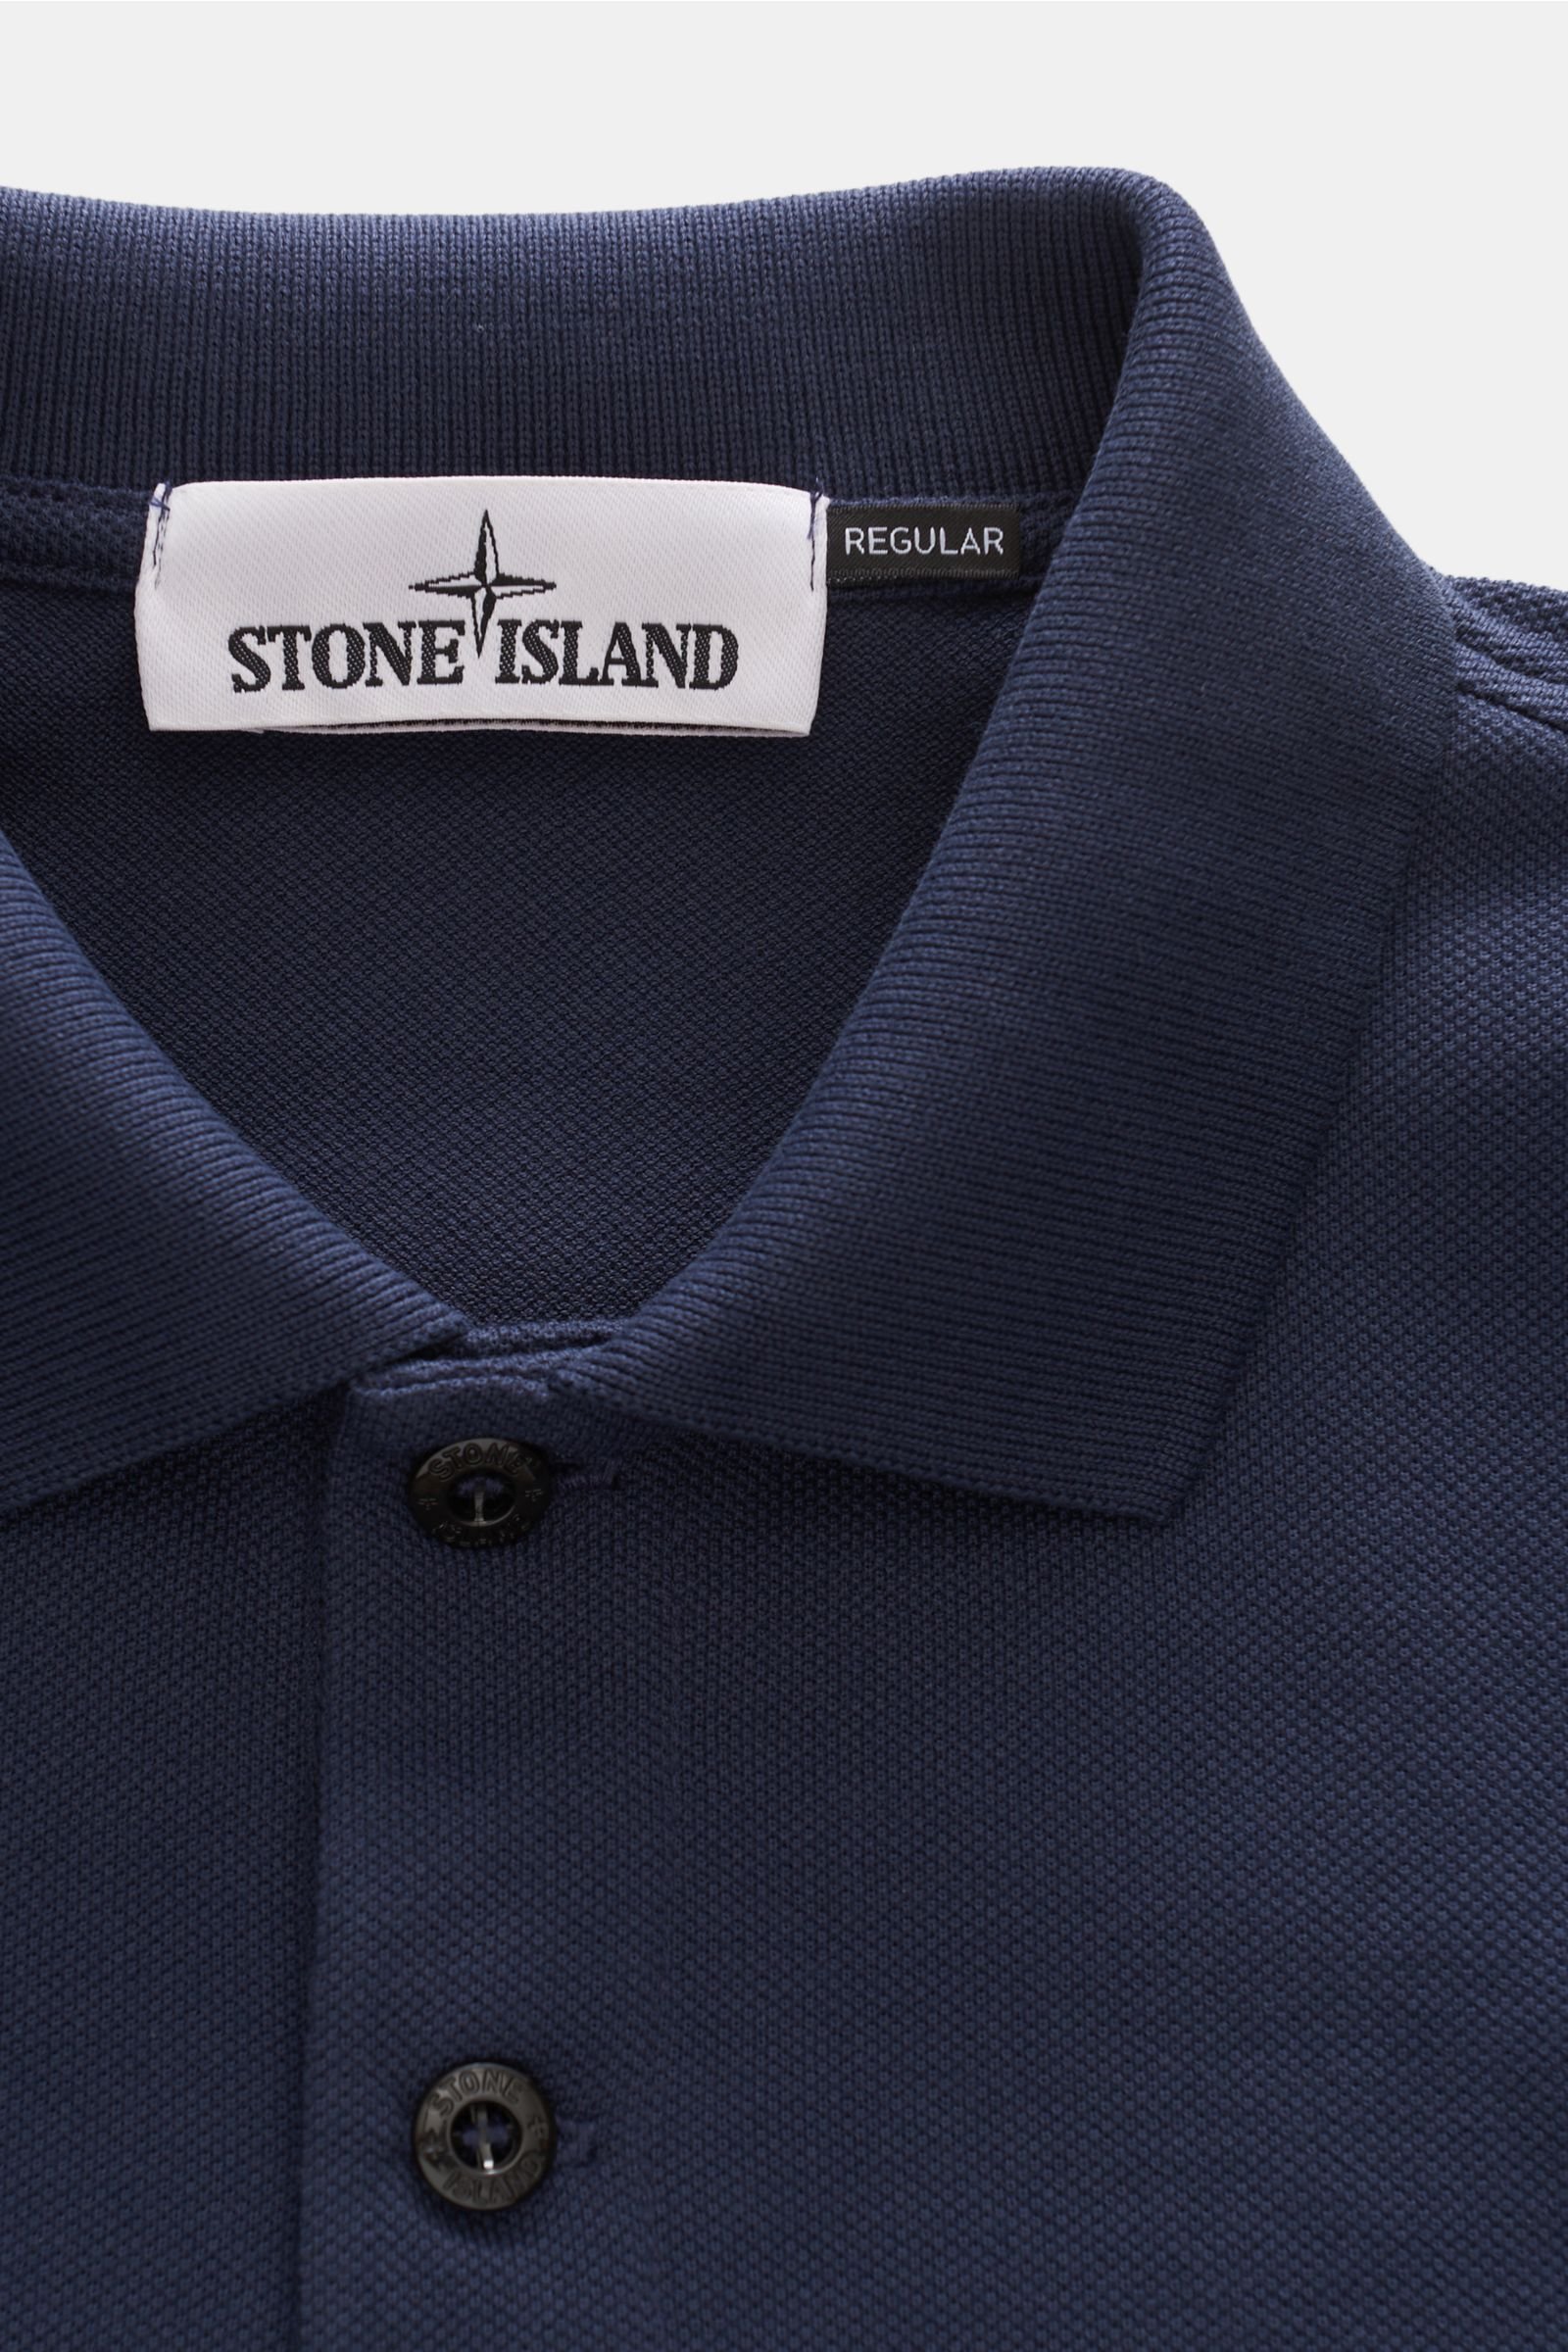 stone island polo shirt navy